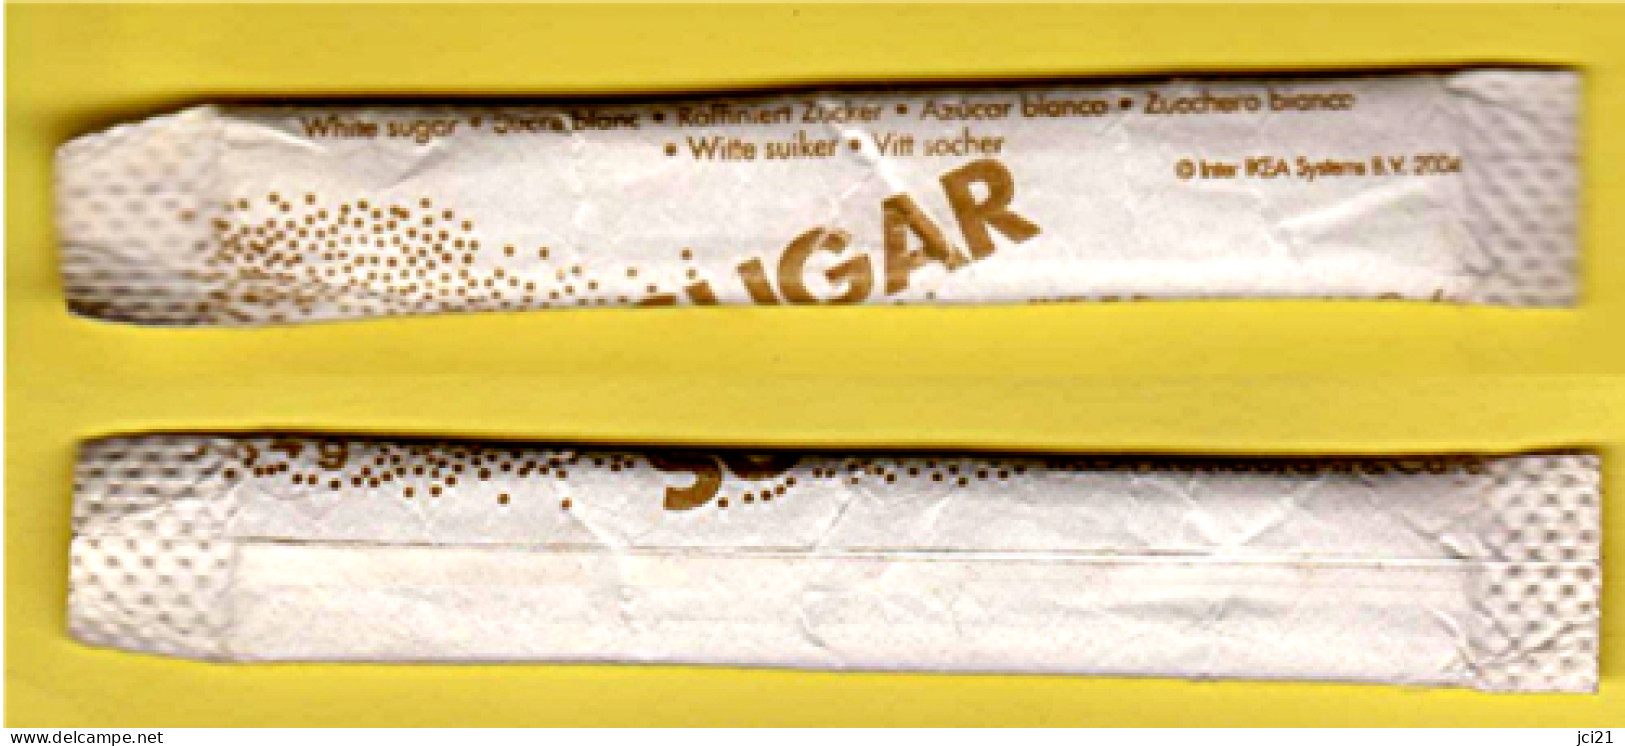 Stick De Sucre " SUGAR - IKEA " [S021]_D352 - Azúcar